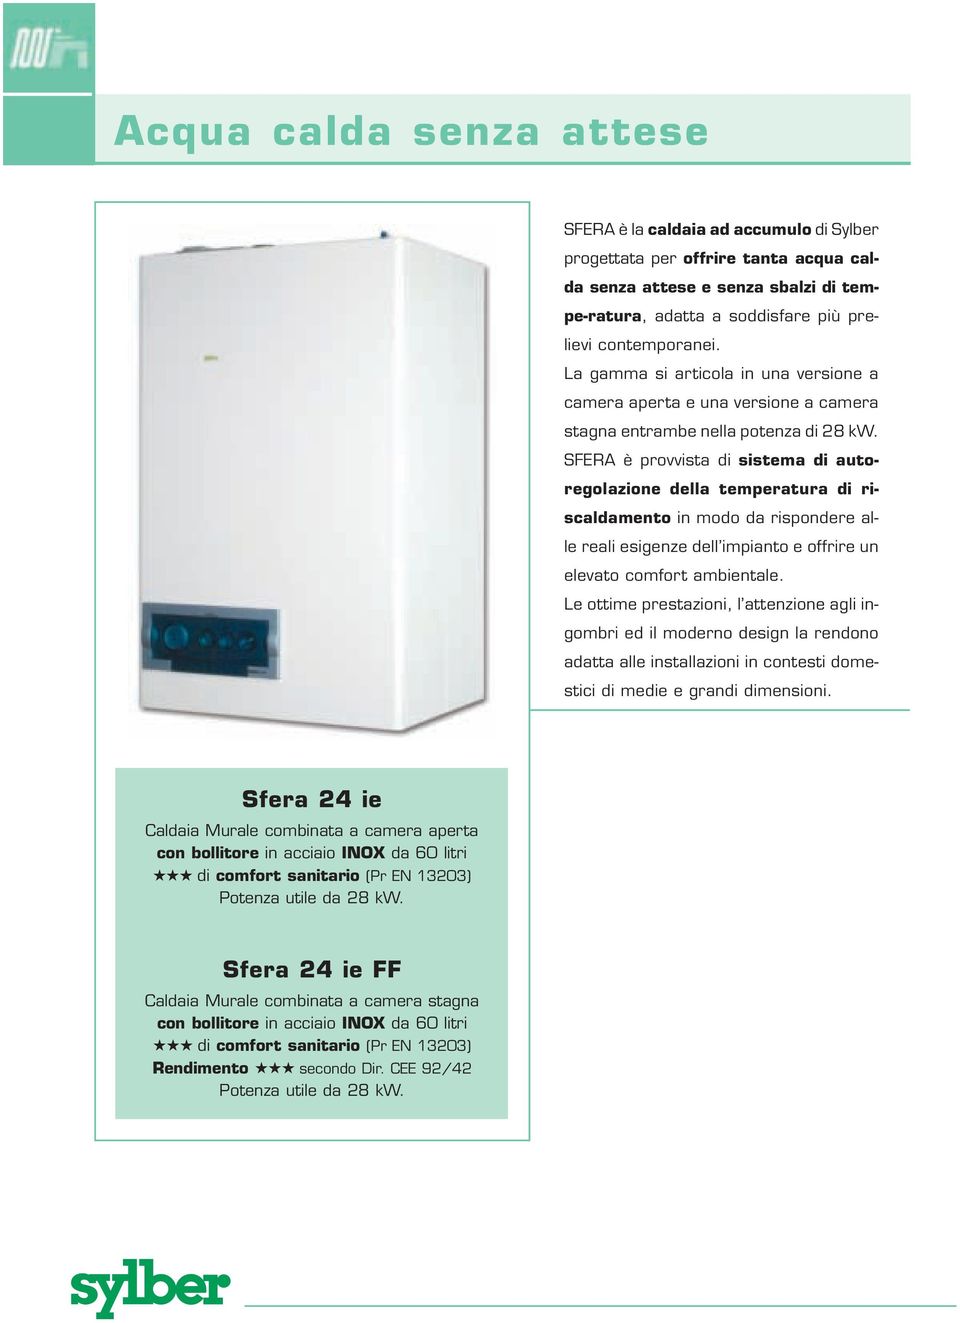 SFERA è provvista di sistema di autoregolazione della temperatura di riscaldamento in modo da rispondere alle reali esigenze dell impianto e offrire un elevato comfort ambientale.